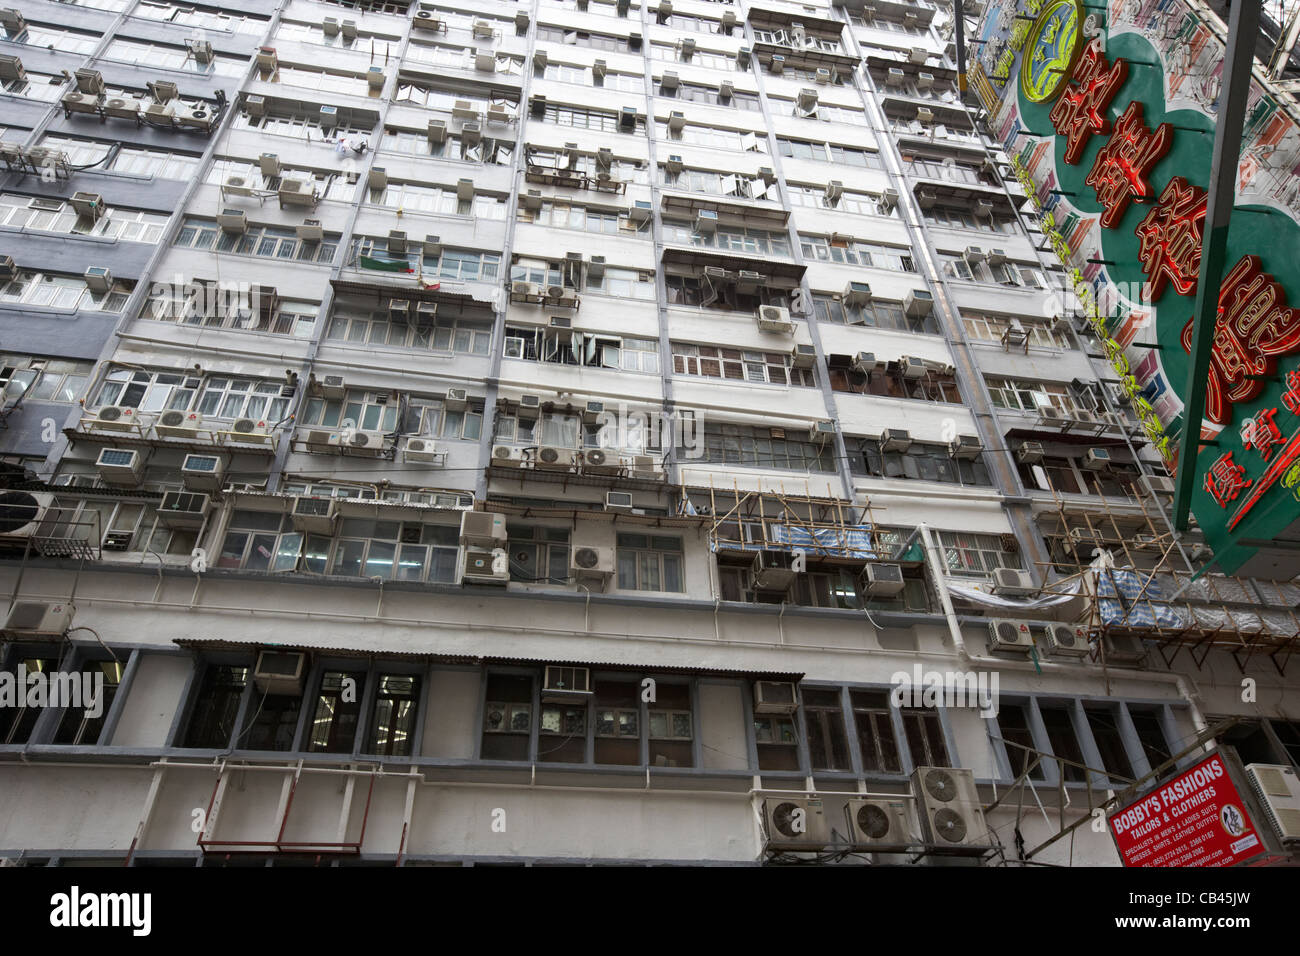 densely populated accommodation block of mirador mansions tsim sha tsui kowloon hong kong hksar china Stock Photo